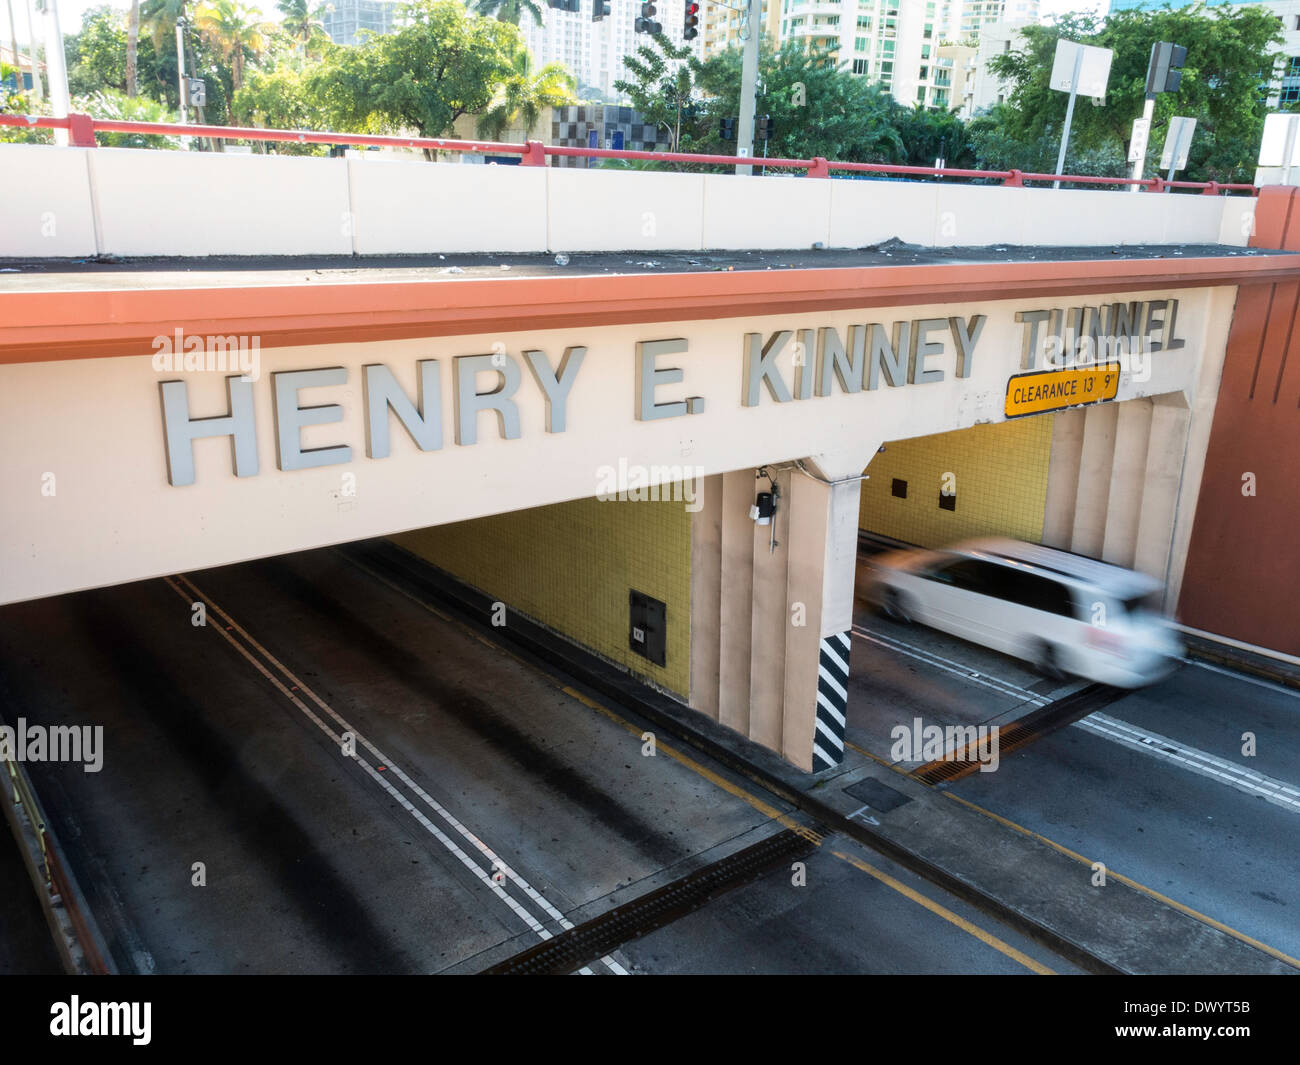 Henry E Kinney Tunnel, Ft Lauderdale, FL, USA Stock Photo